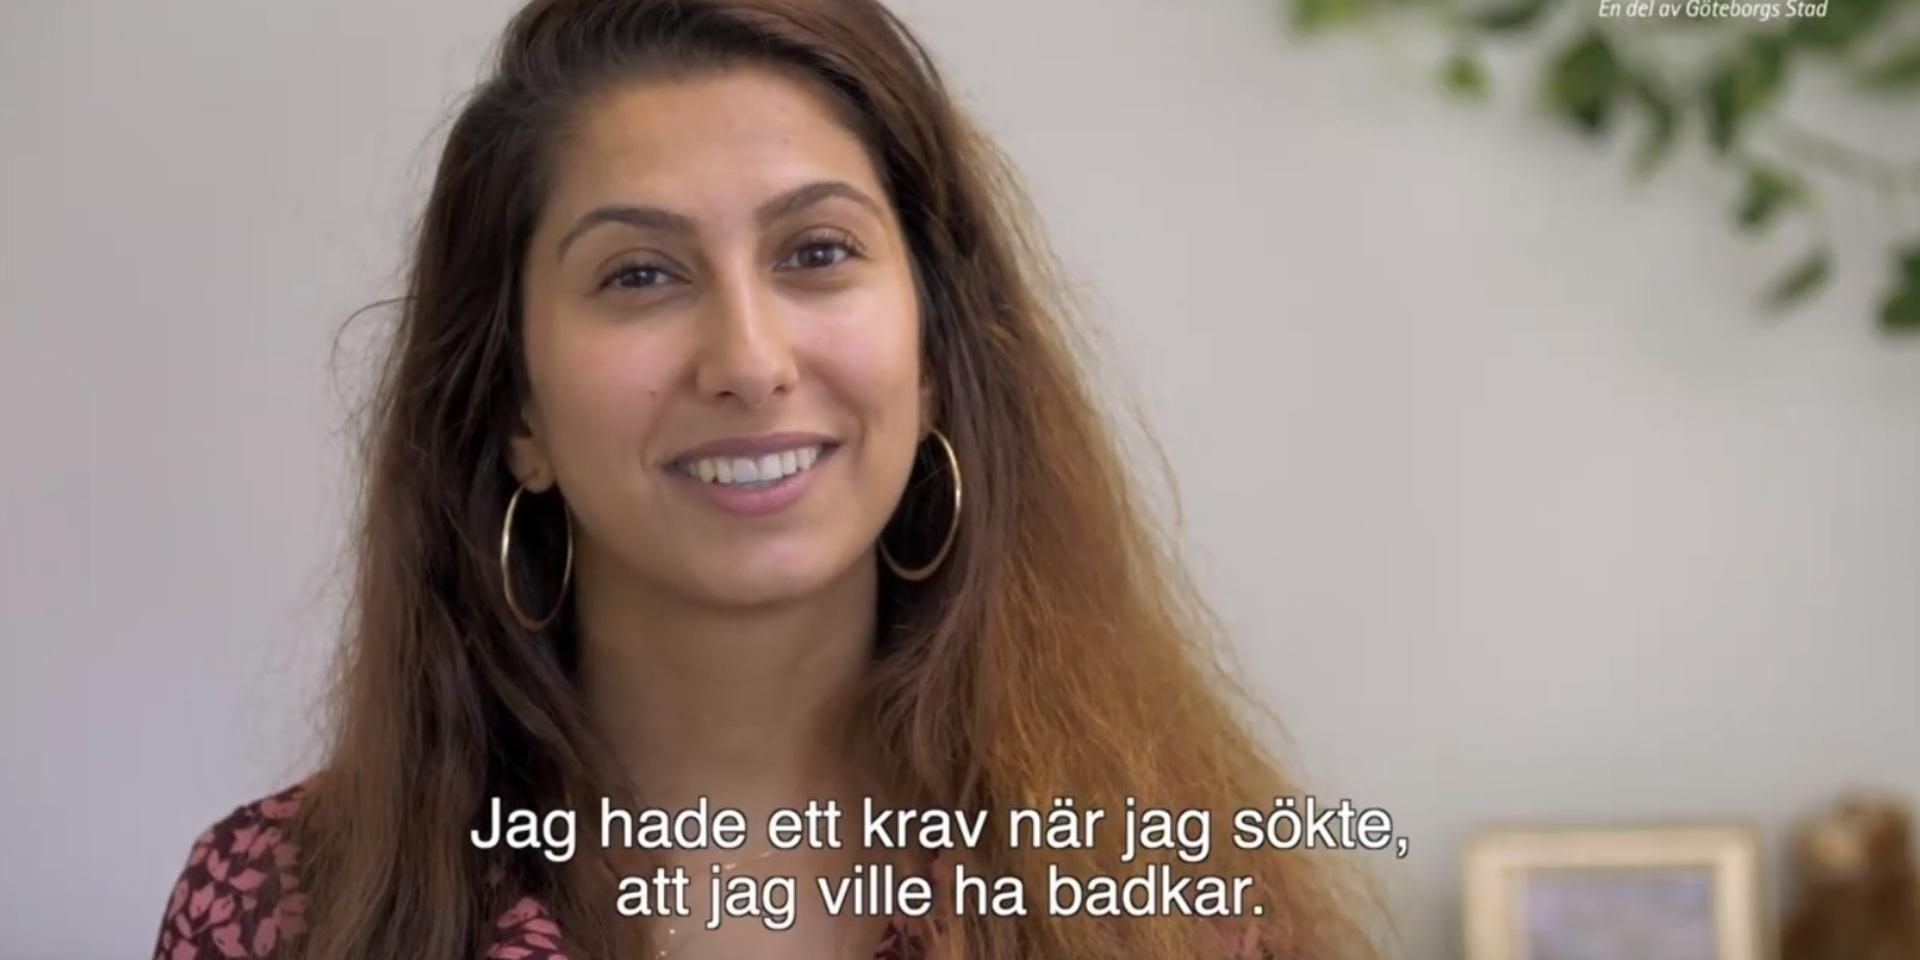 I reklamen som går på bio berättar en tjej om hur hon fick sin lägenhet via Boplats Göteborg.